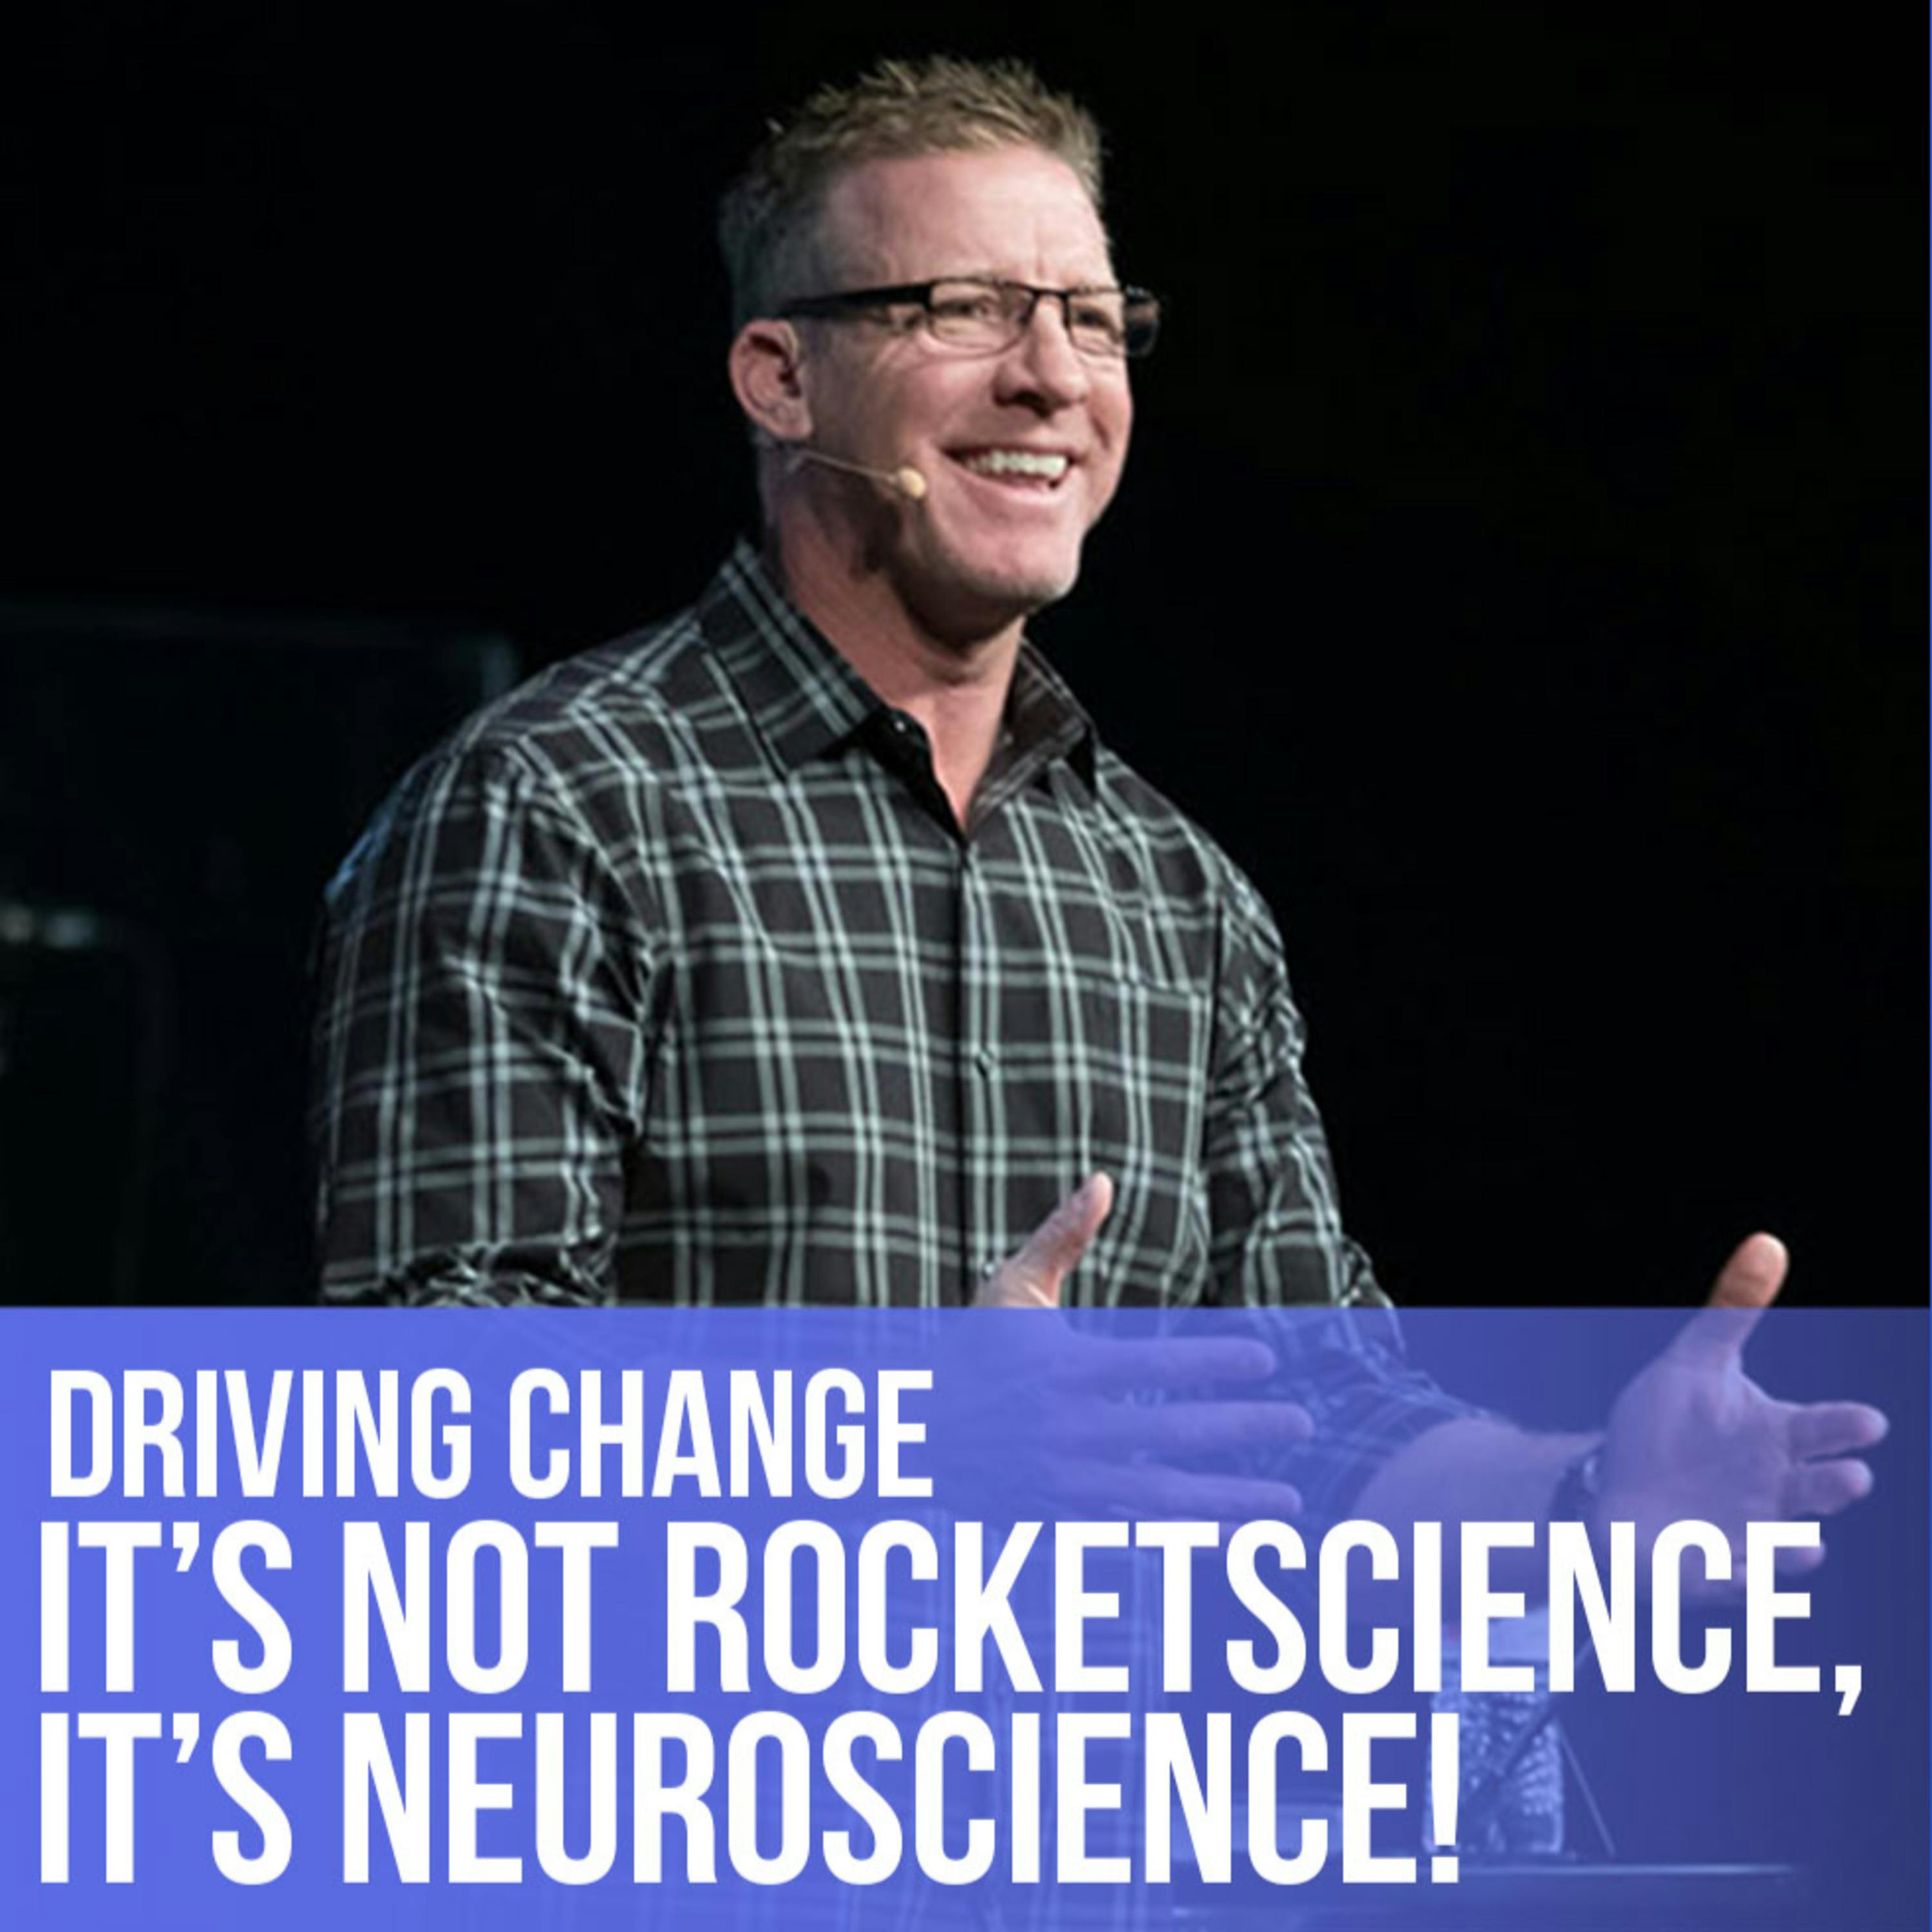 Jeff Bloomfield: It's Not Rocketscience, It's Neuroscience